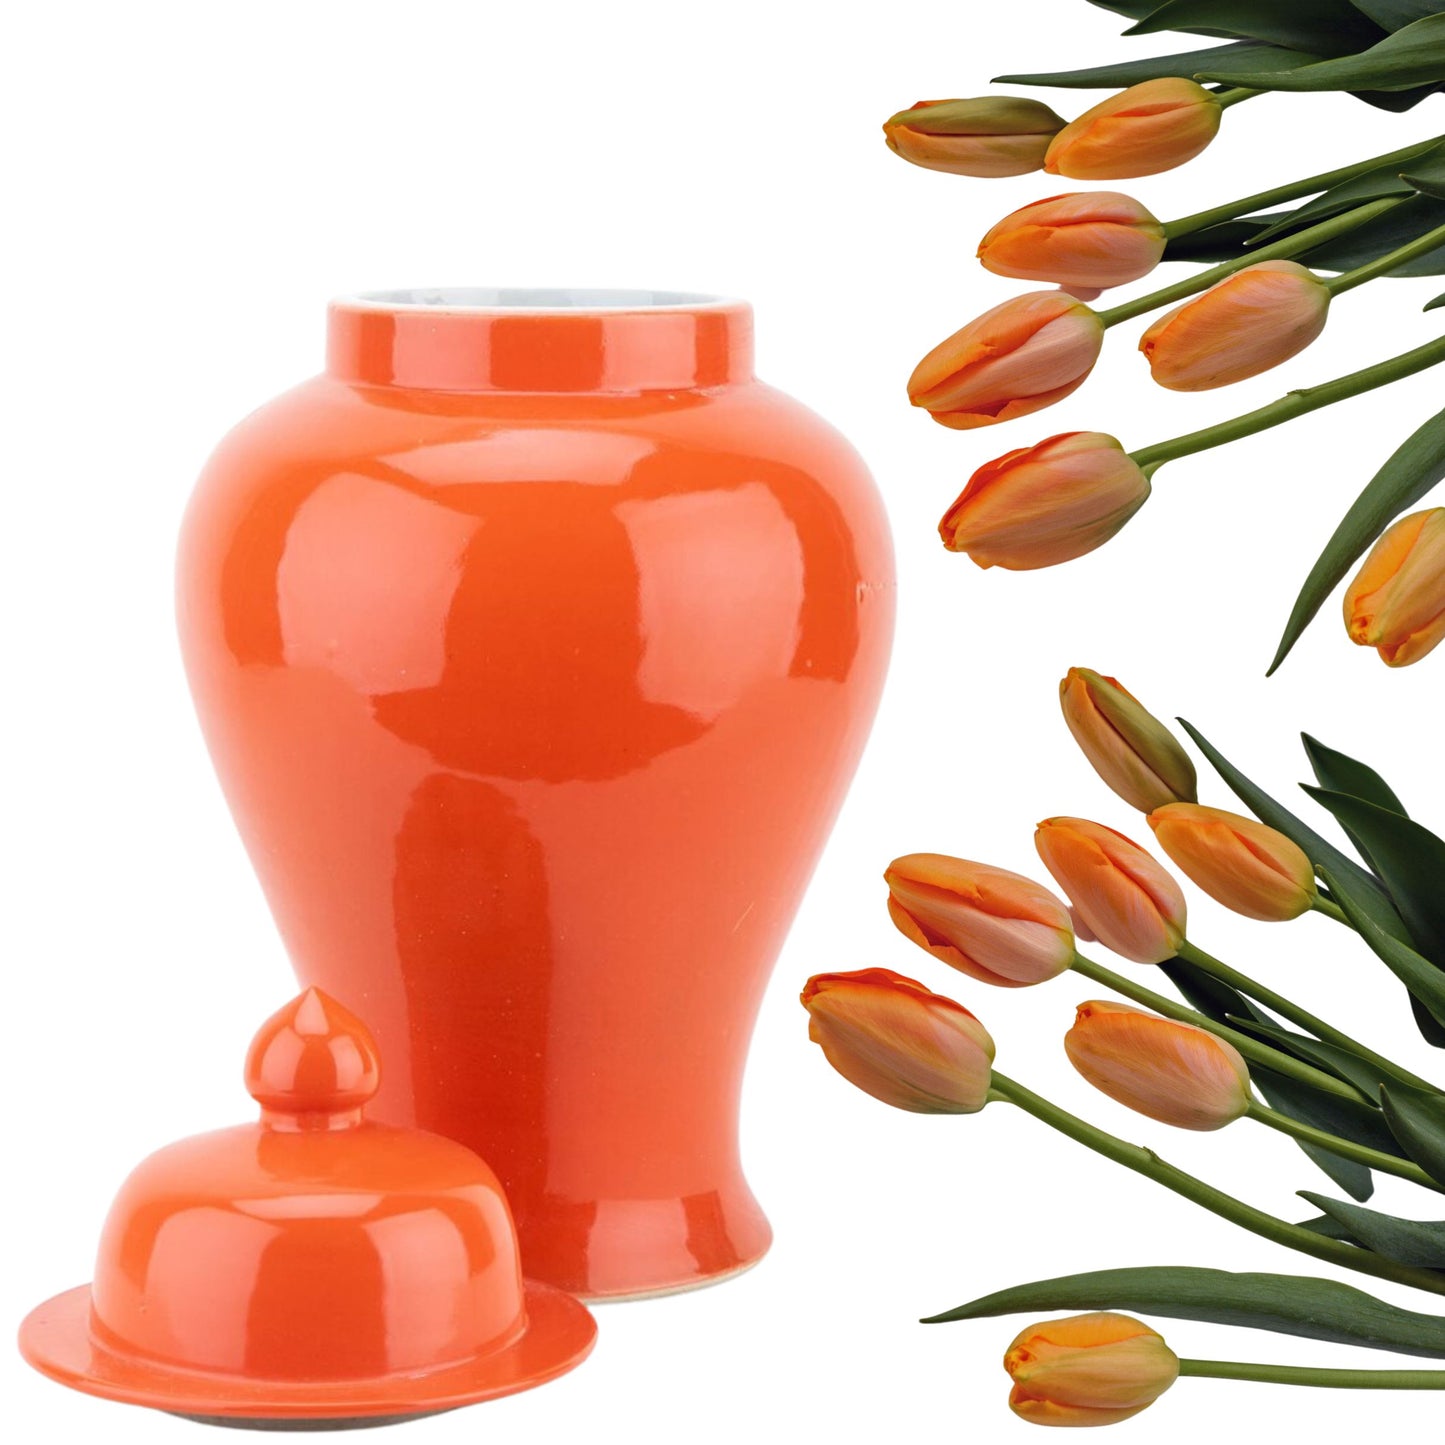 NEW - Tangerine Orange, 16" Tall Porcelain Ginger Jar